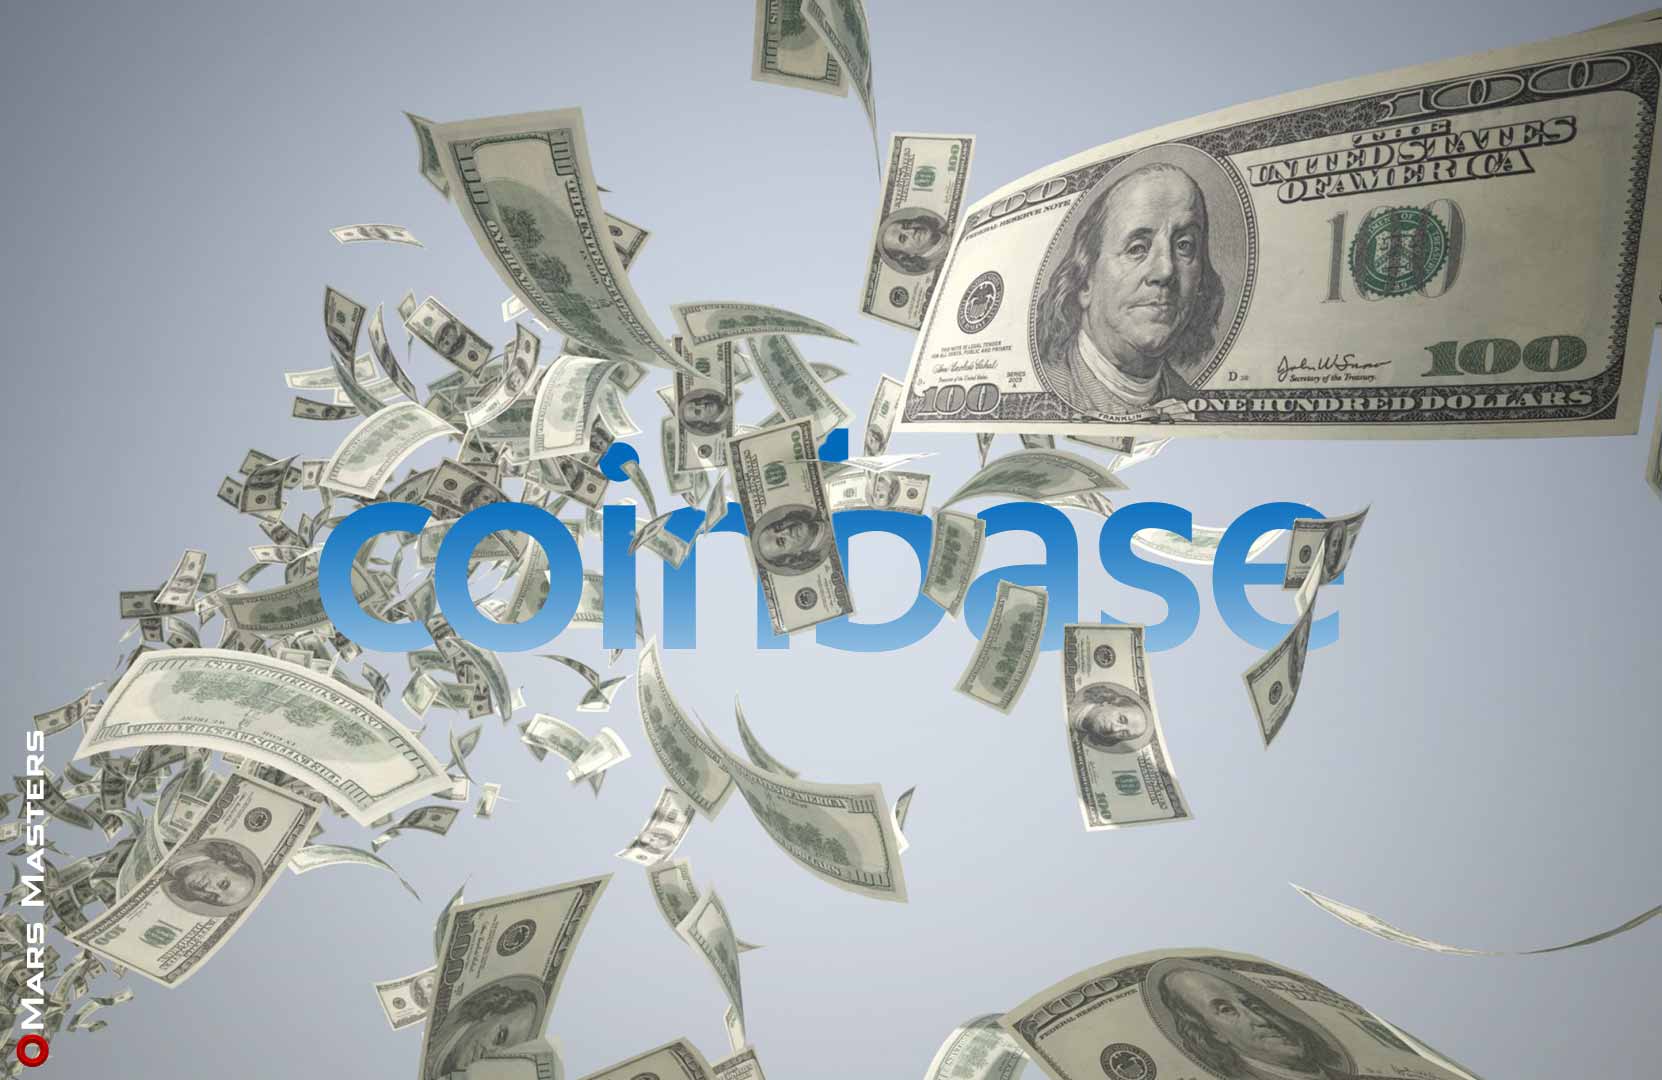 Messari values Coinbase at $28 billion following IPO filing